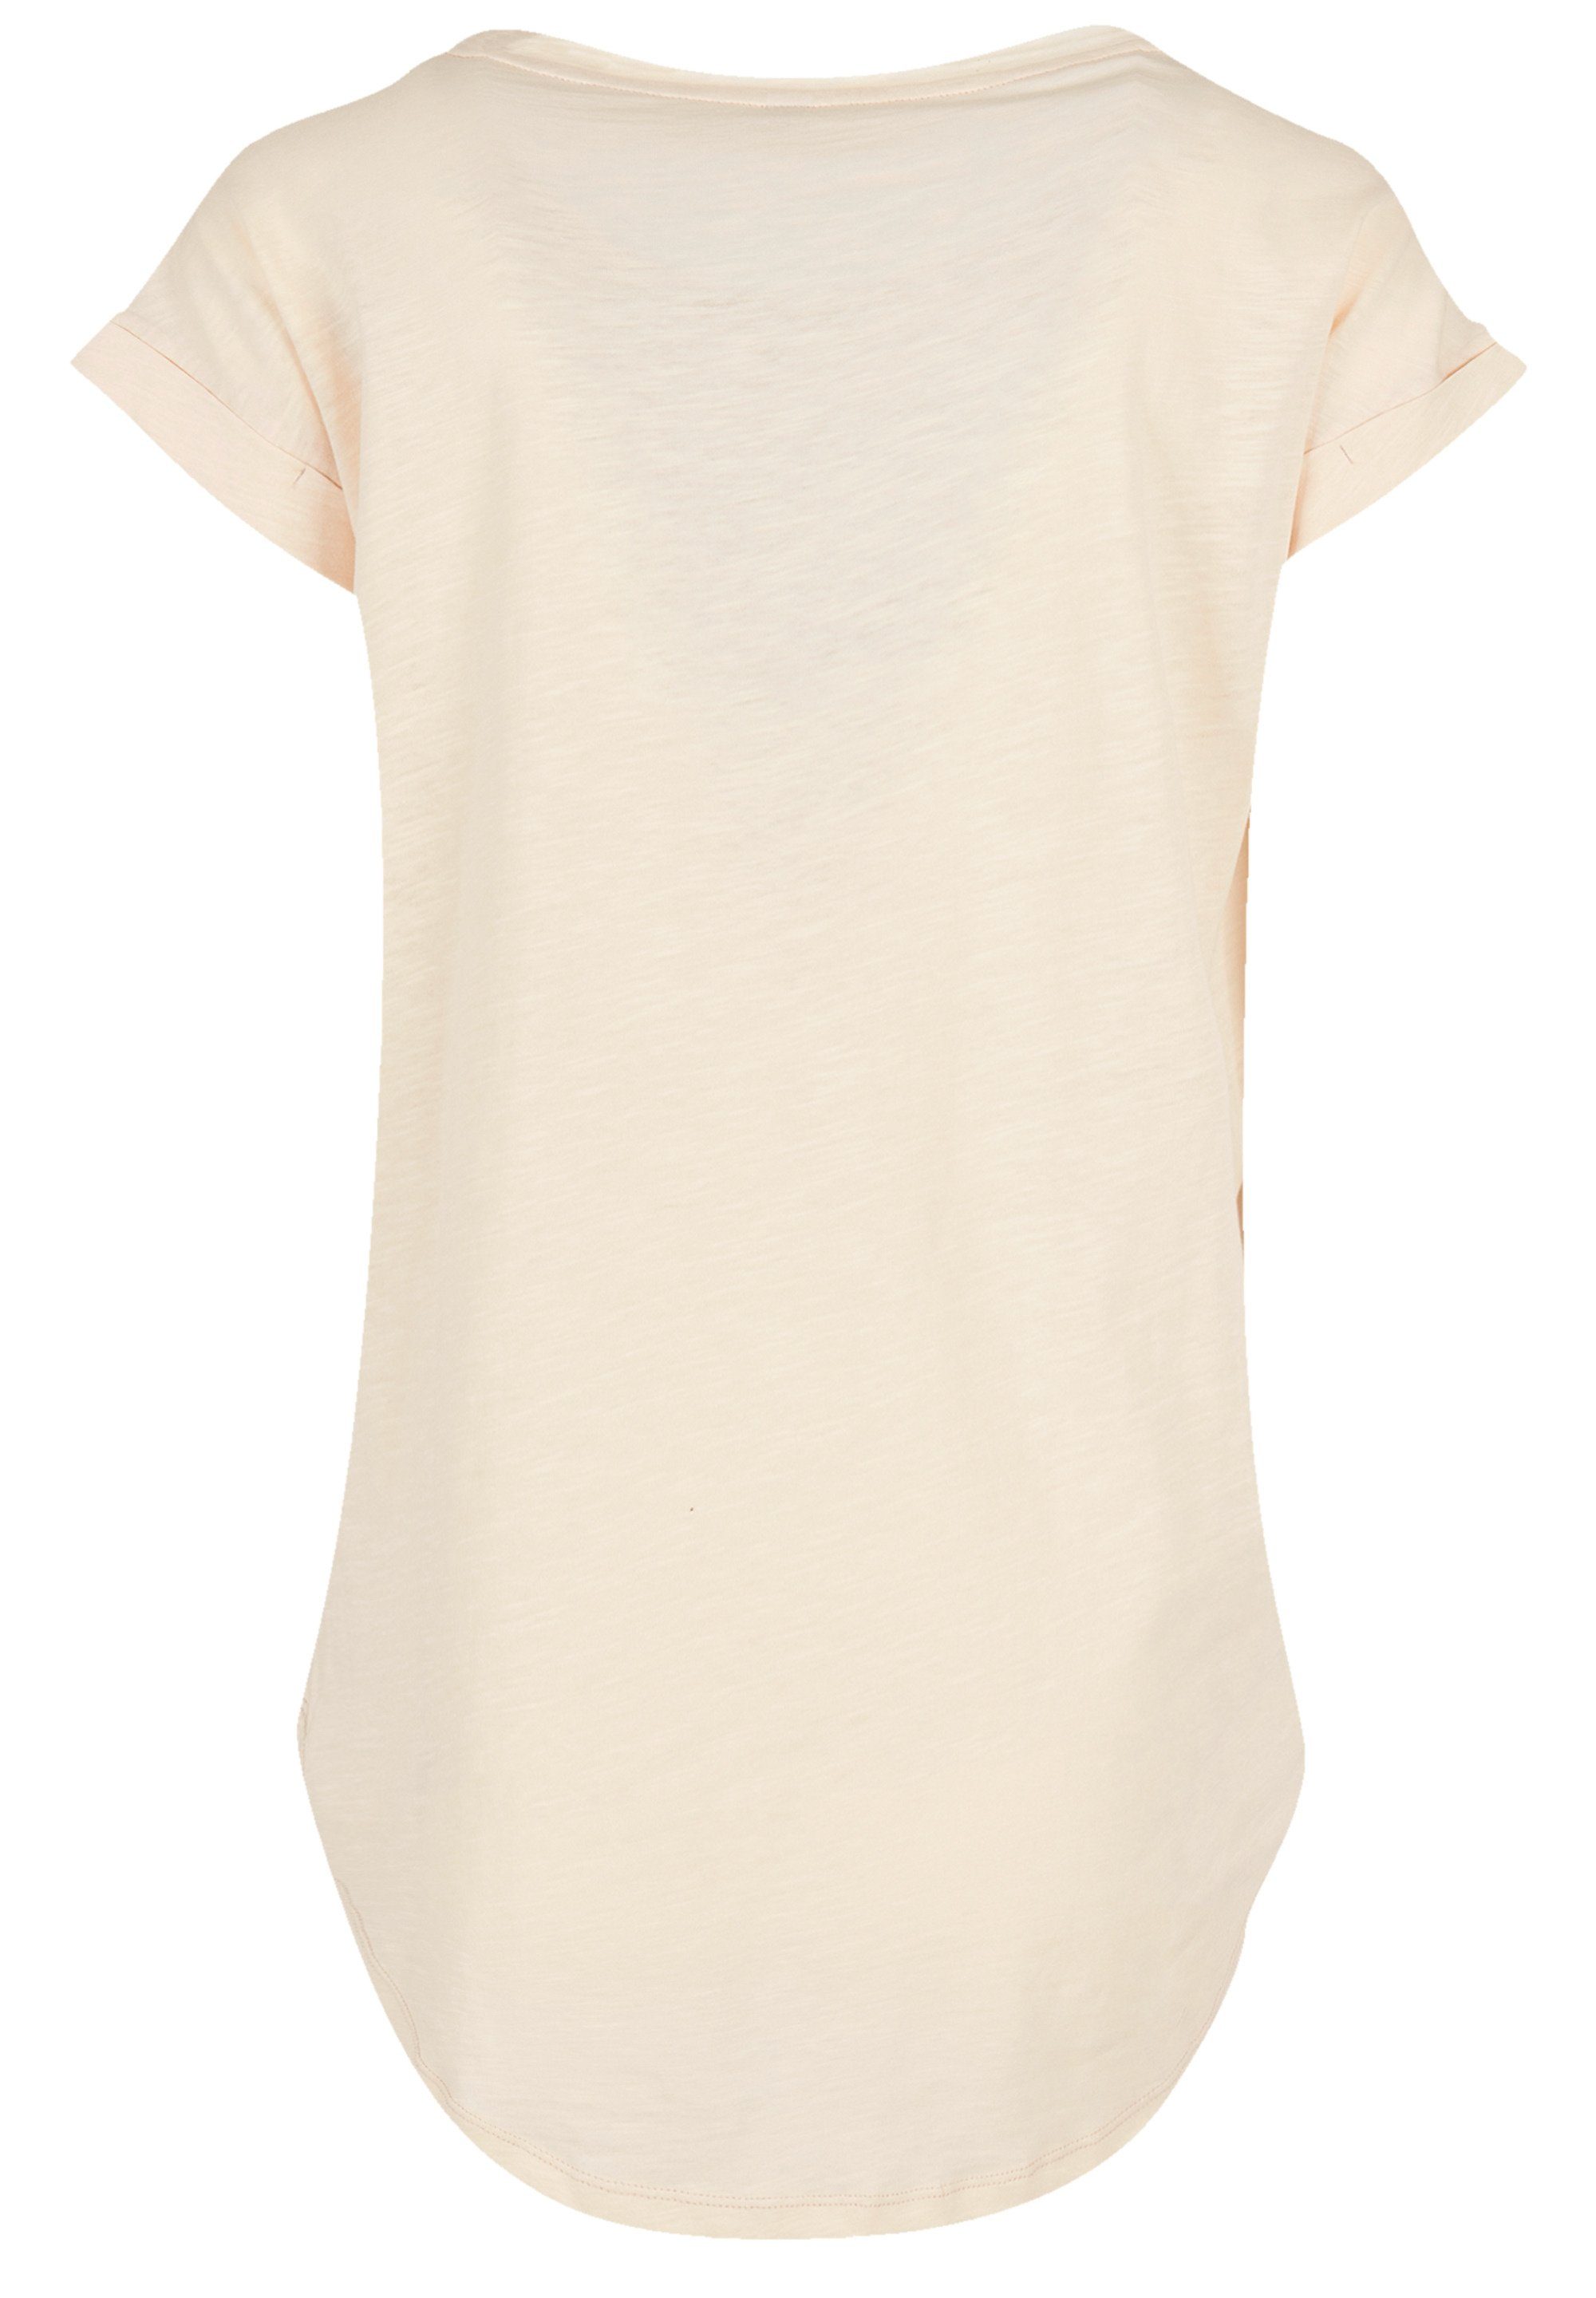 Damen The geschnittenes Logo T-Shirt Band Premium Hinten lang extra Qualität, F4NT4STIC Jam T-Shirt Classic